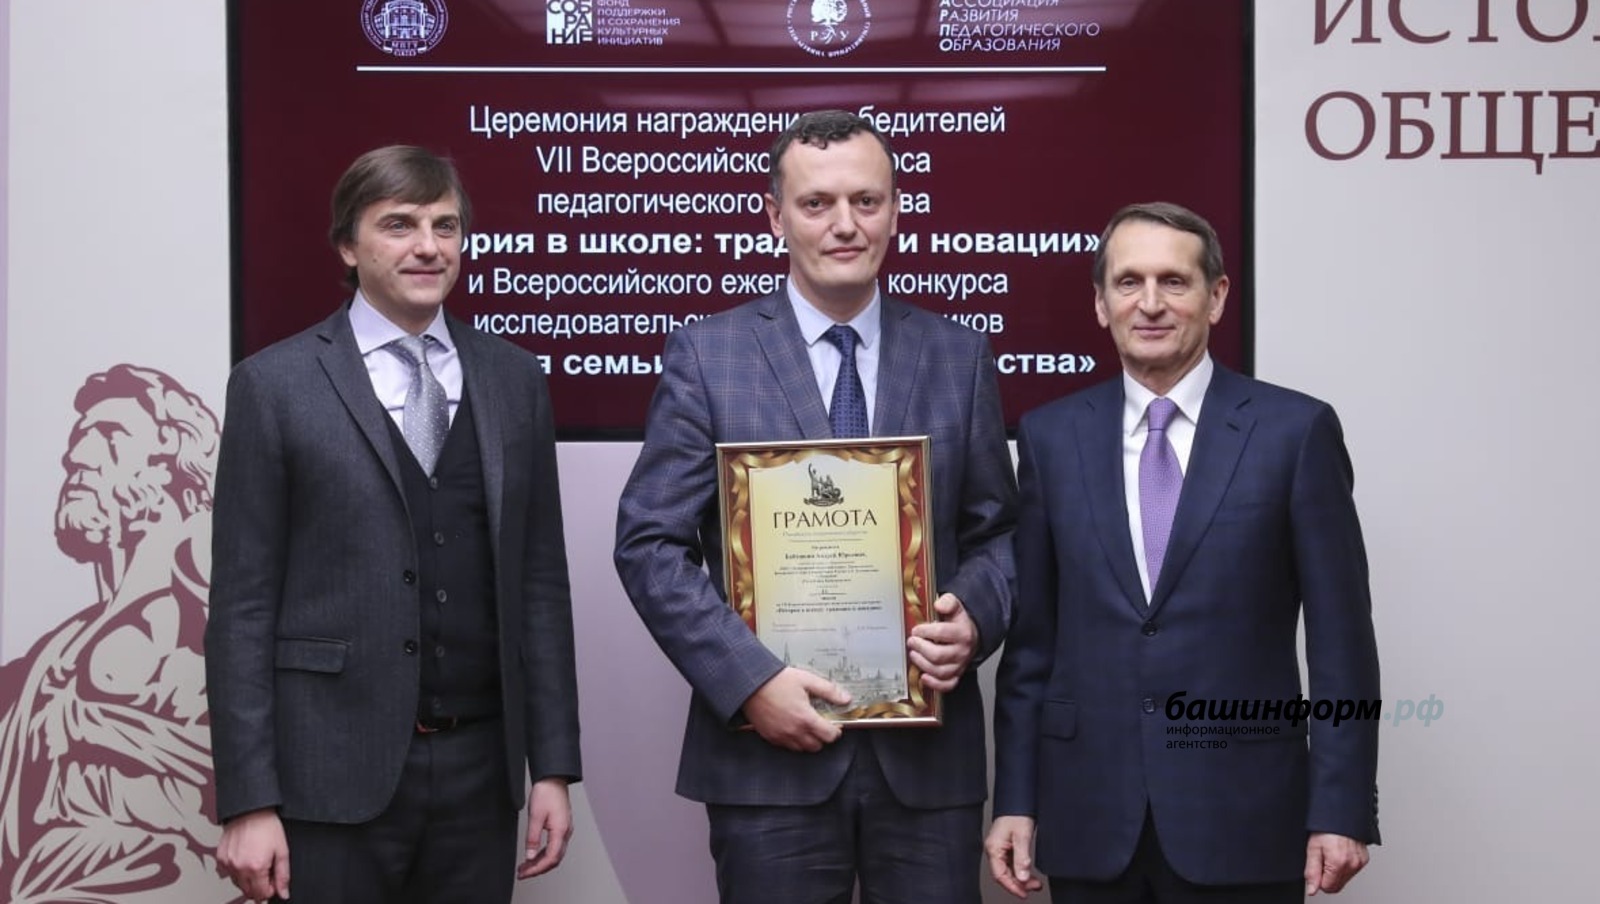 Учитель истории из Башкирии стал победителем всероссийского конкурса педагогического мастерства